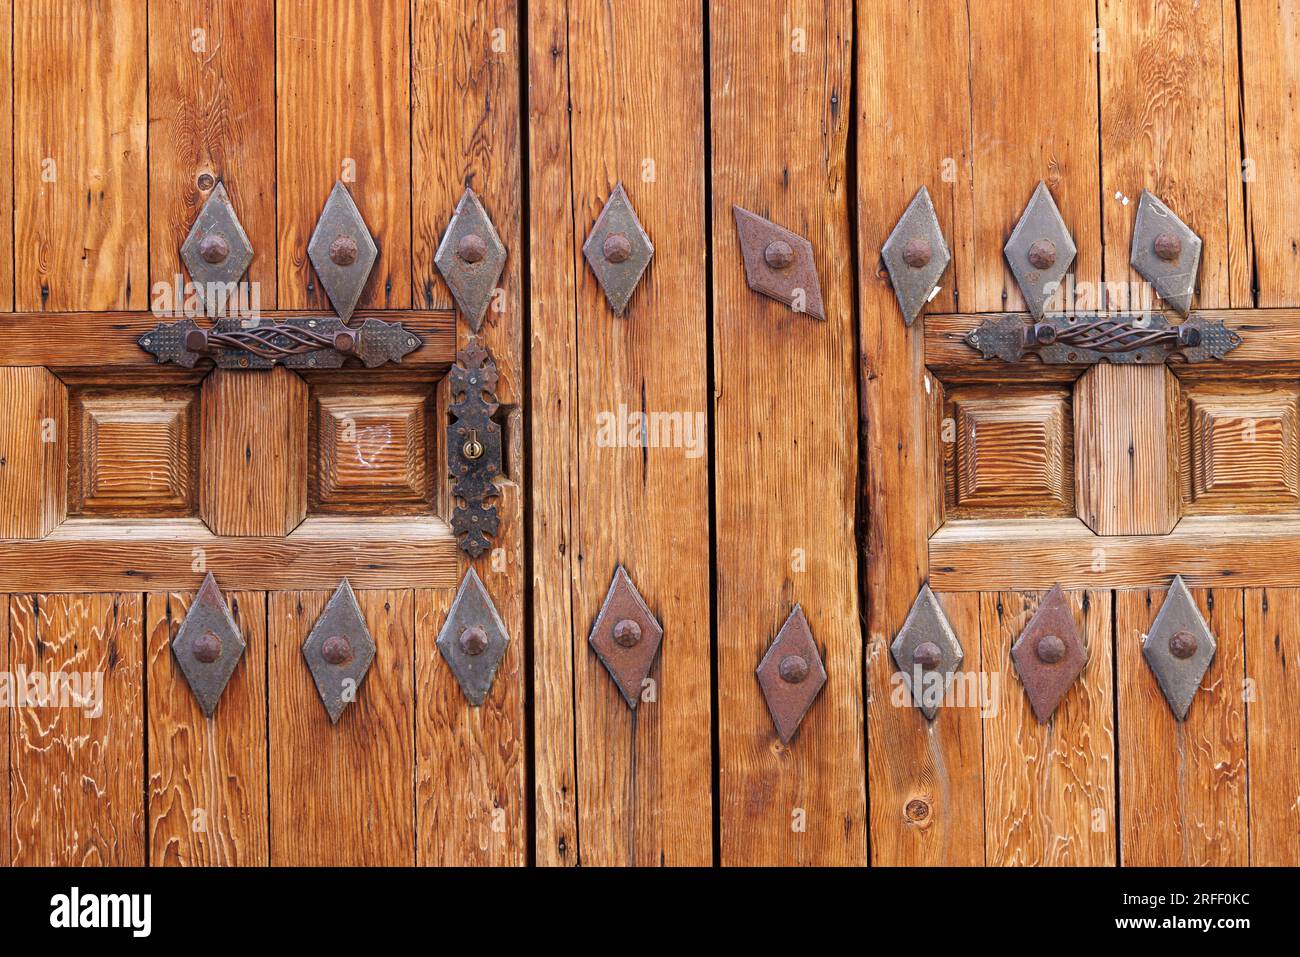 Espagne, Extremadura, Coria, détail de porte de maison Banque D'Images